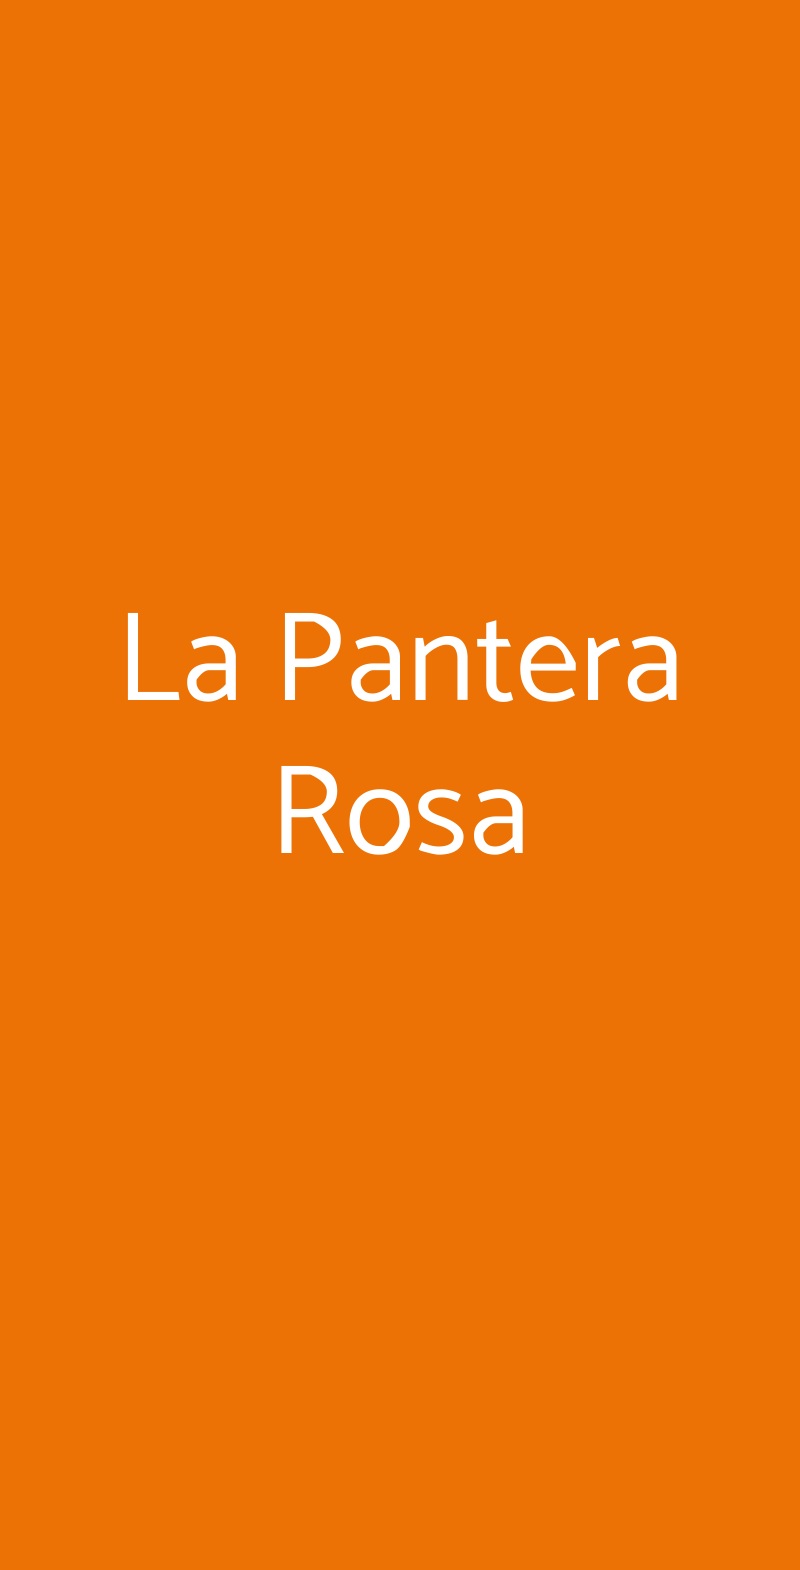 La Pantera Rosa Bologna menù 1 pagina